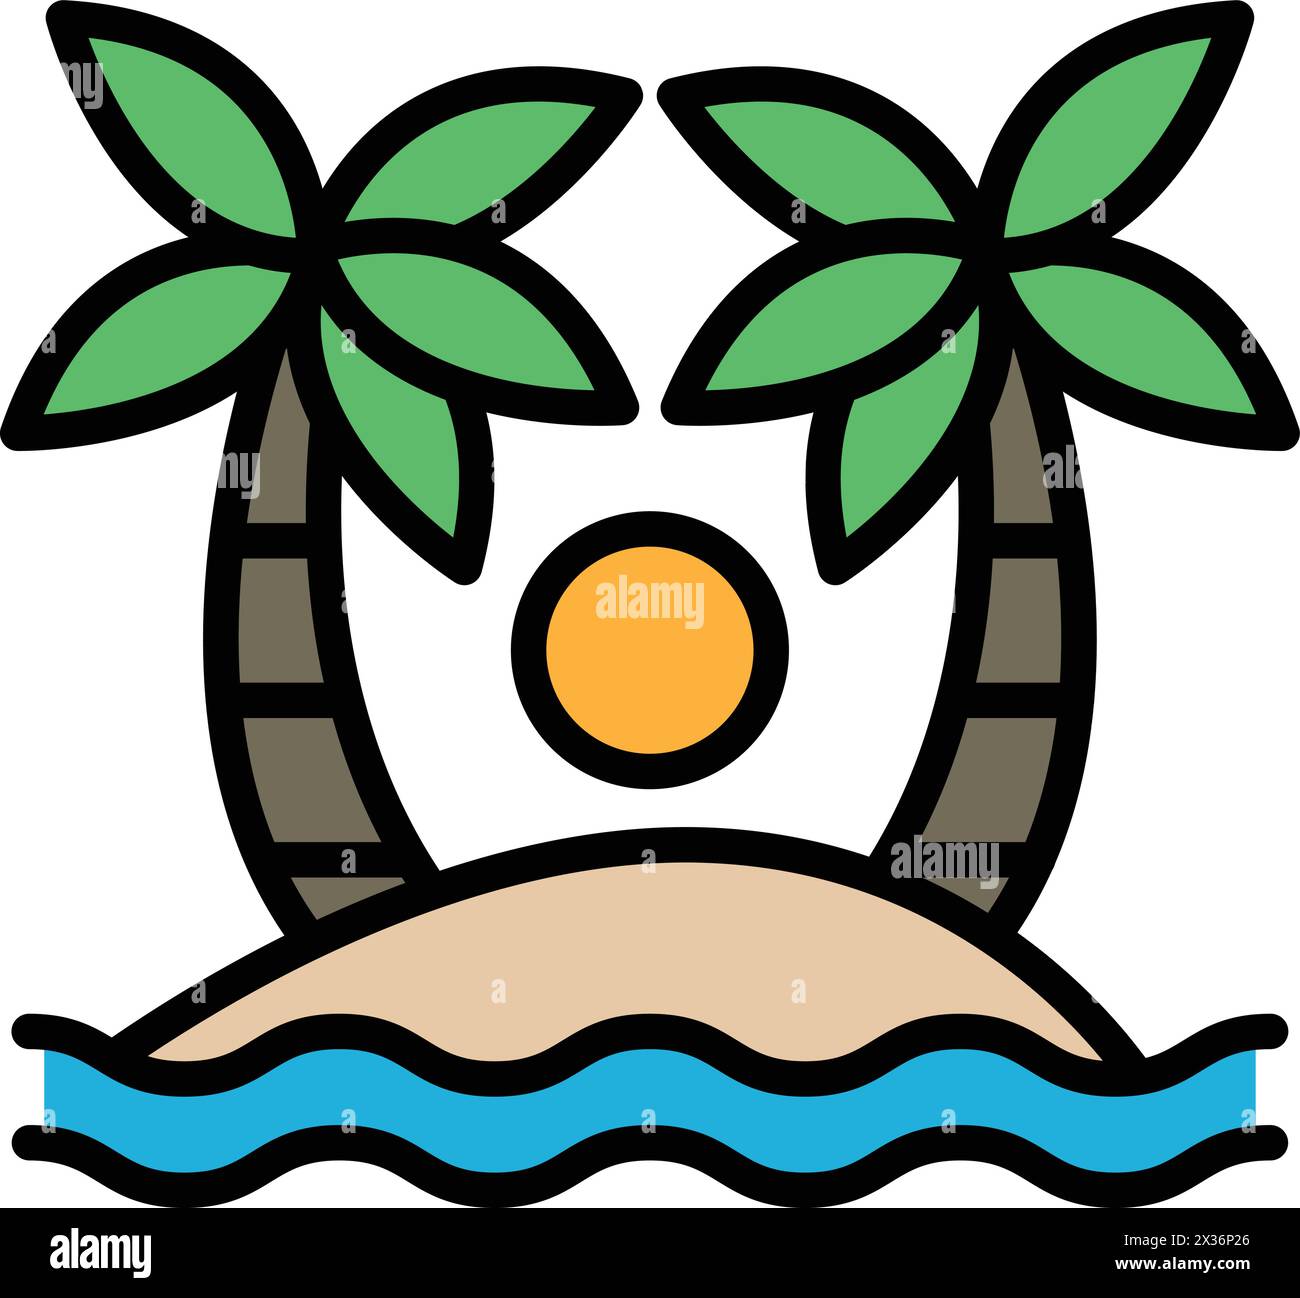 Eine Zeichnung einer Palme mit einer Sonne am Himmel. Die Palme liegt an einem Strand mit dem Meer im Hintergrund. Die Zeichnung hat eine entspannte und friedliche Atmosphäre Stock Vektor